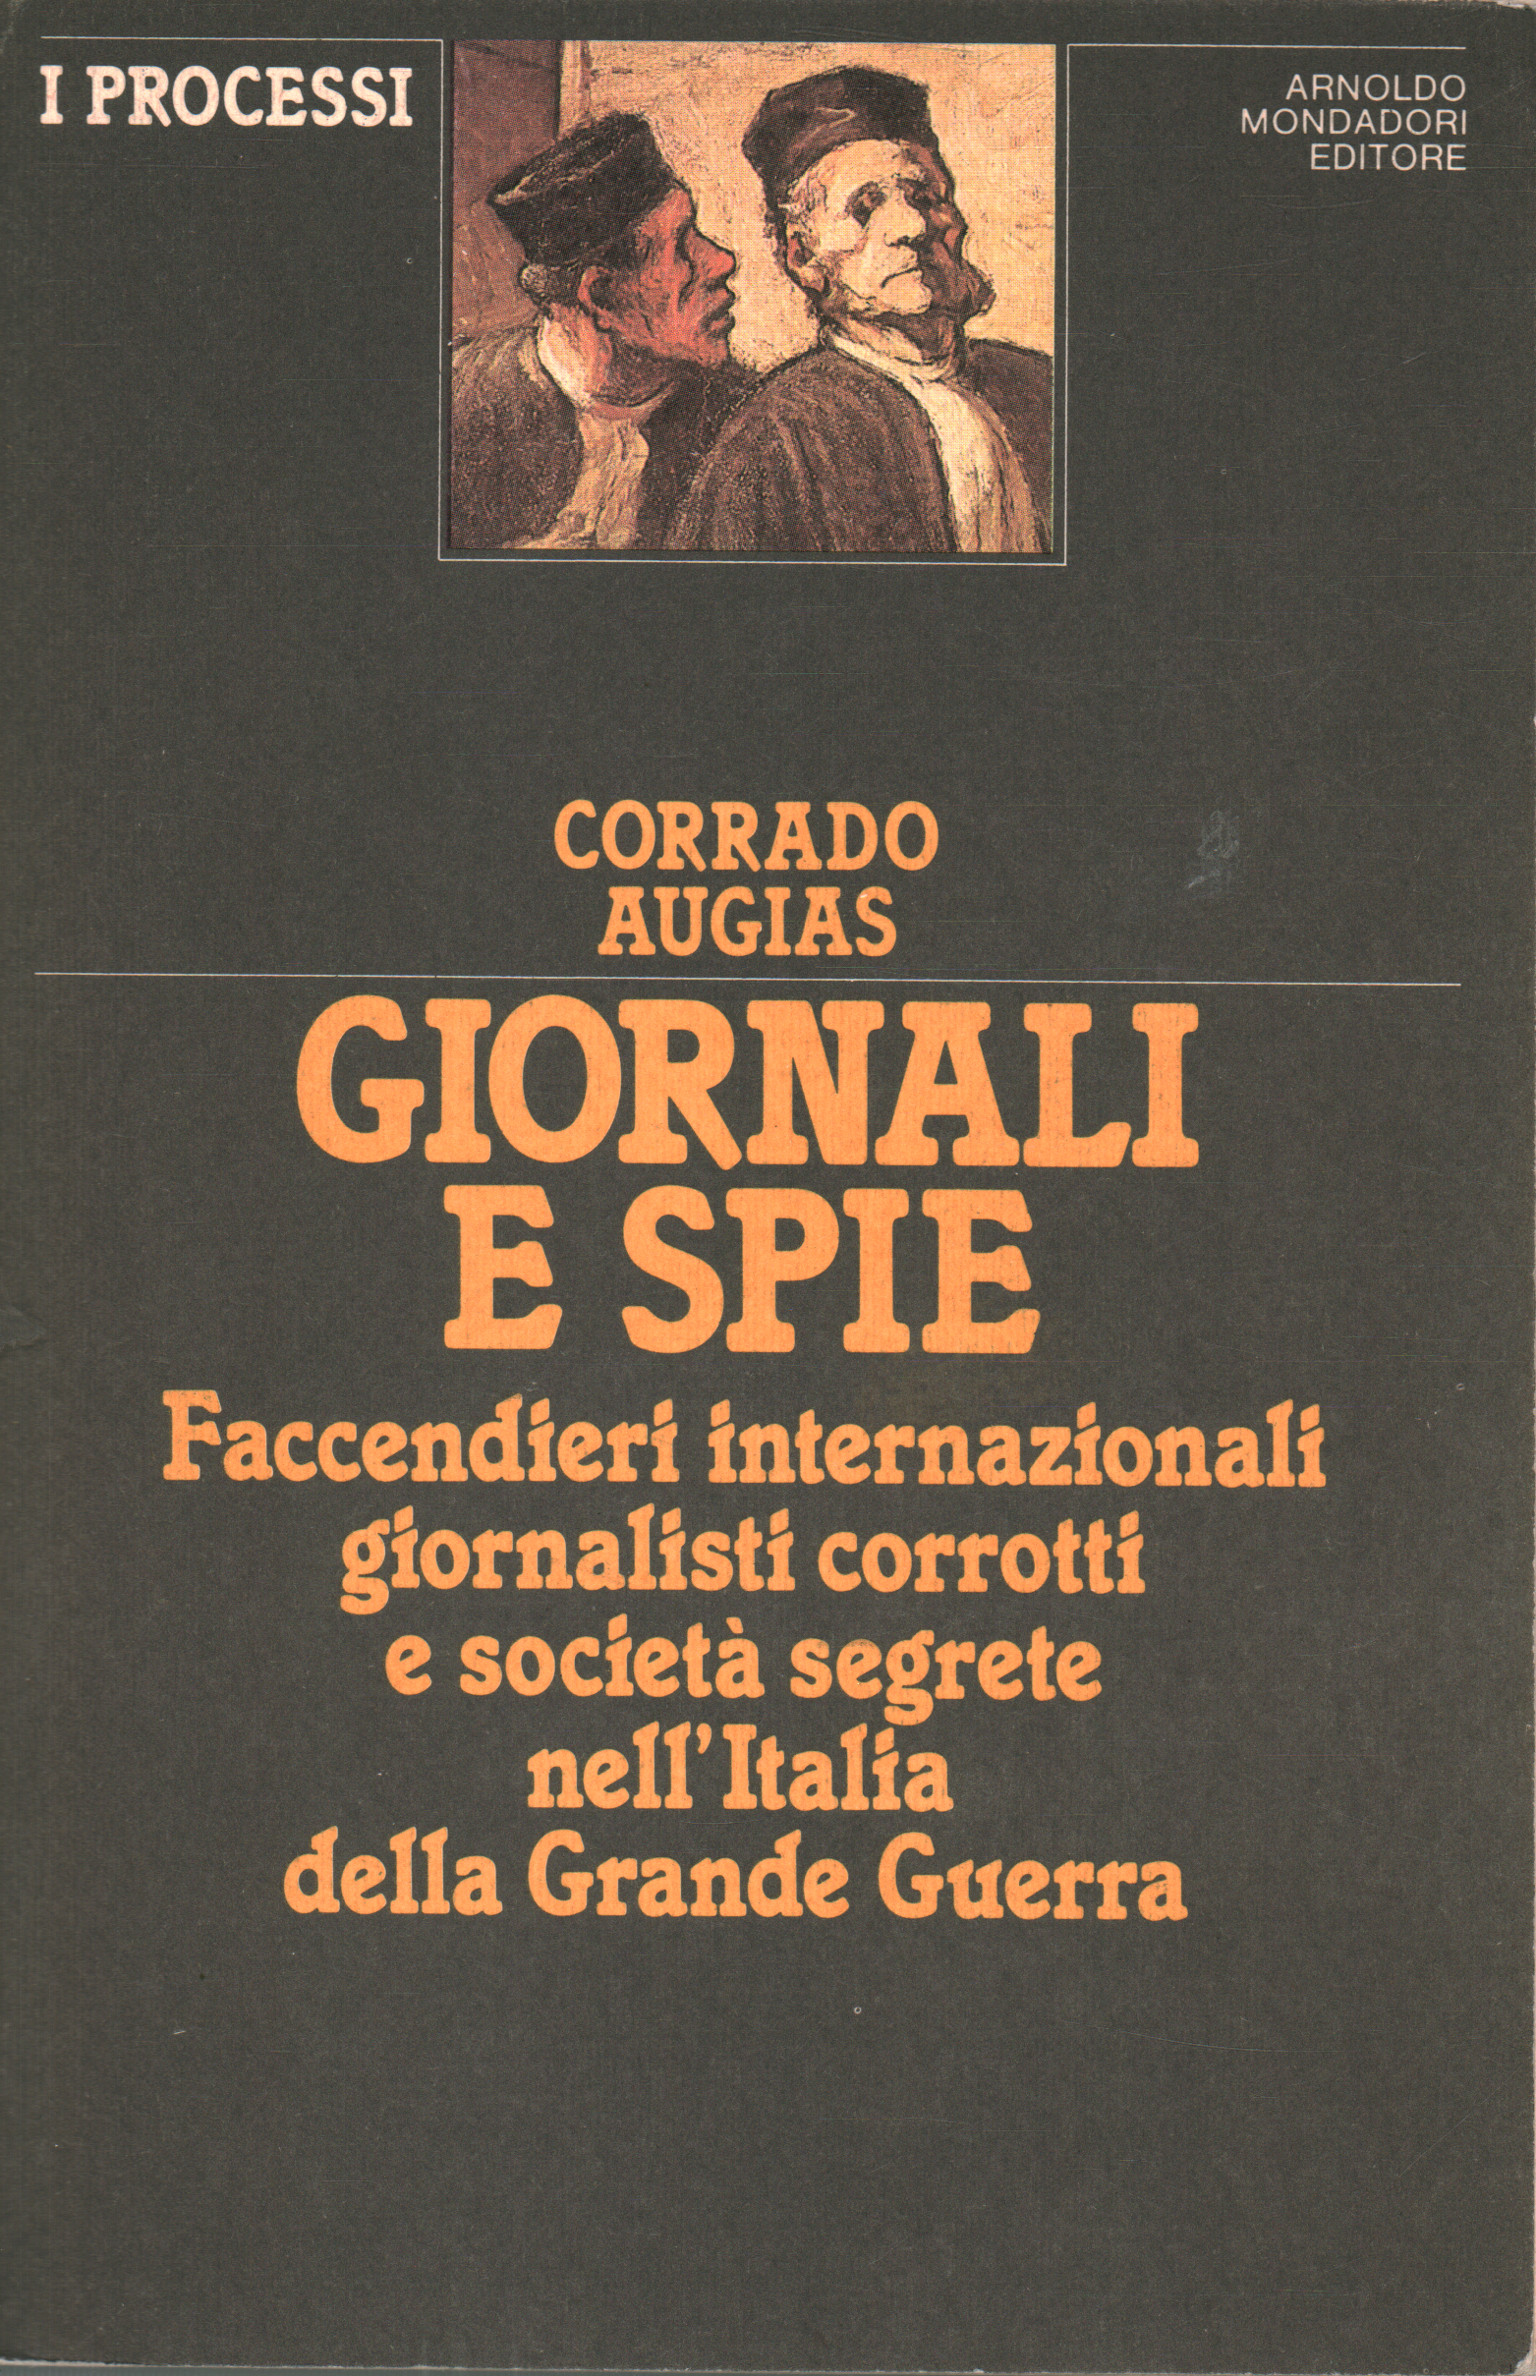 Periódicos y espías, Corrado Augias